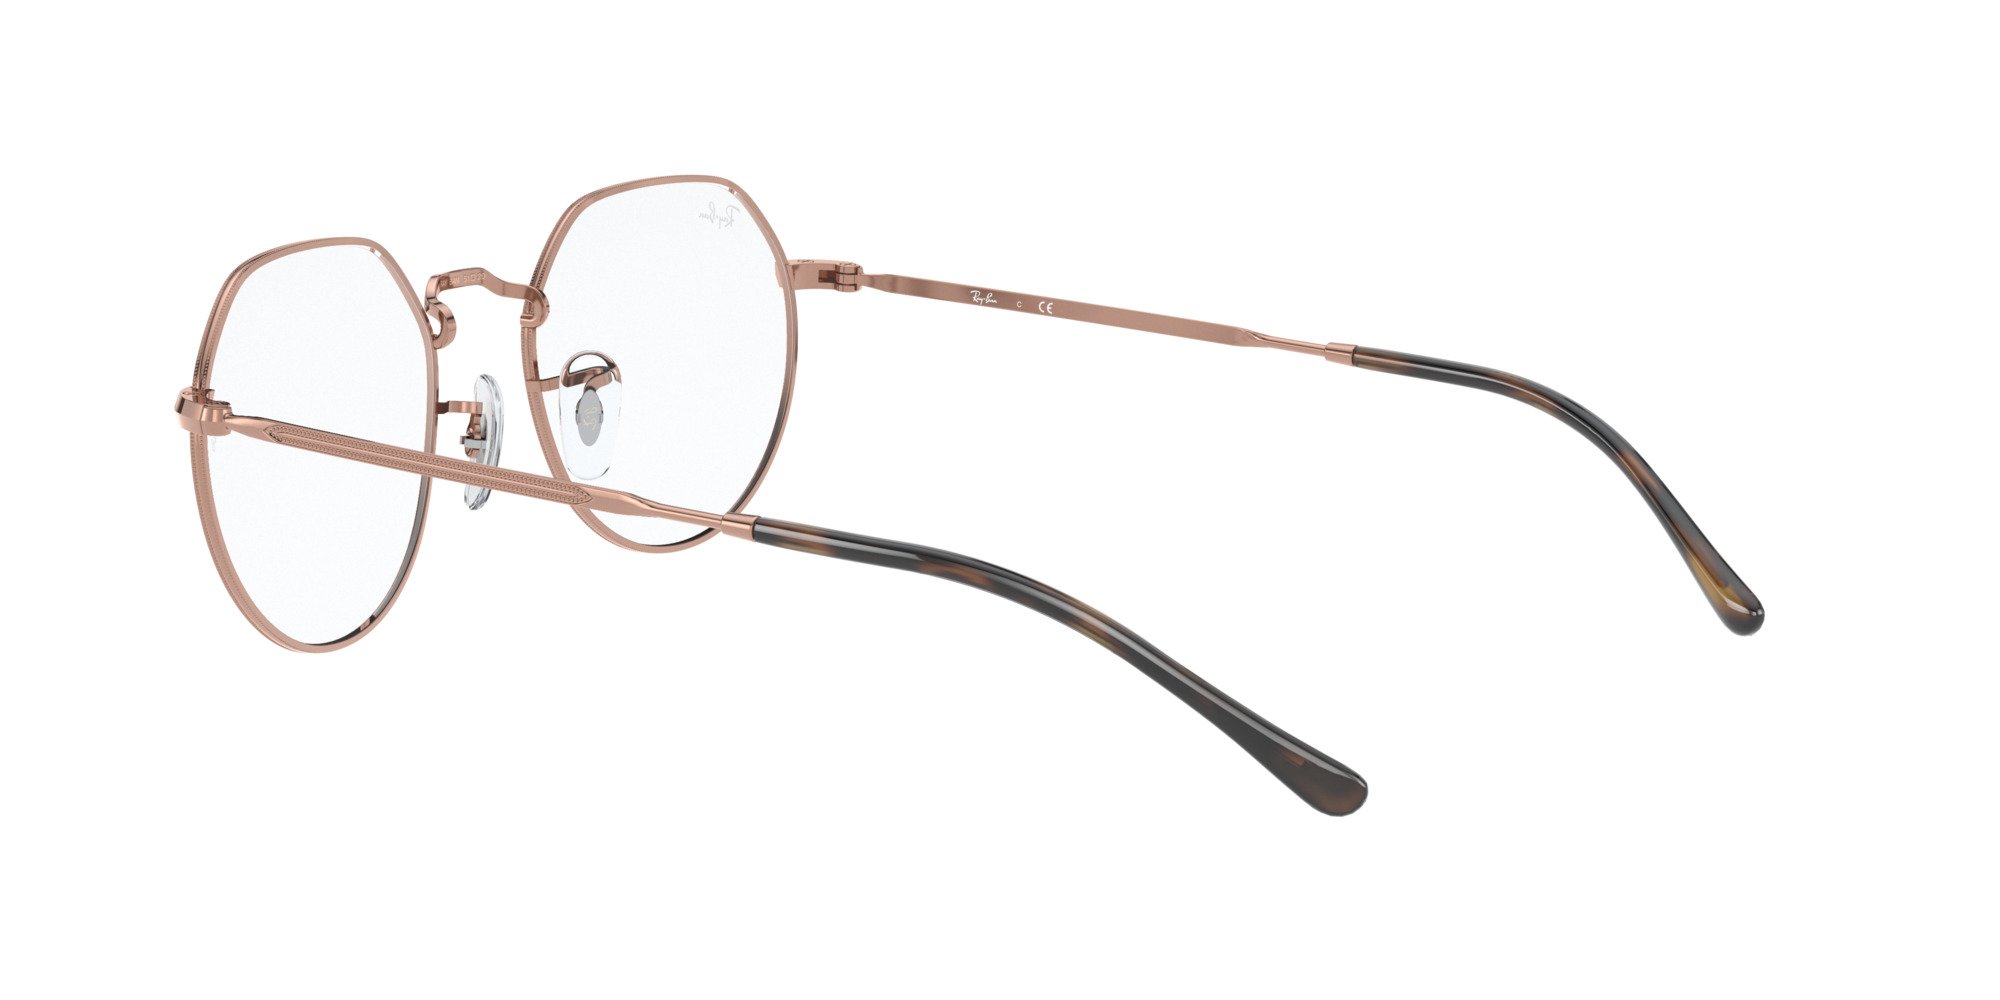 Das Bild zeigt die Korrektionsbrille RX6564 2943 von der Marke Ray Ban in Kupfer.